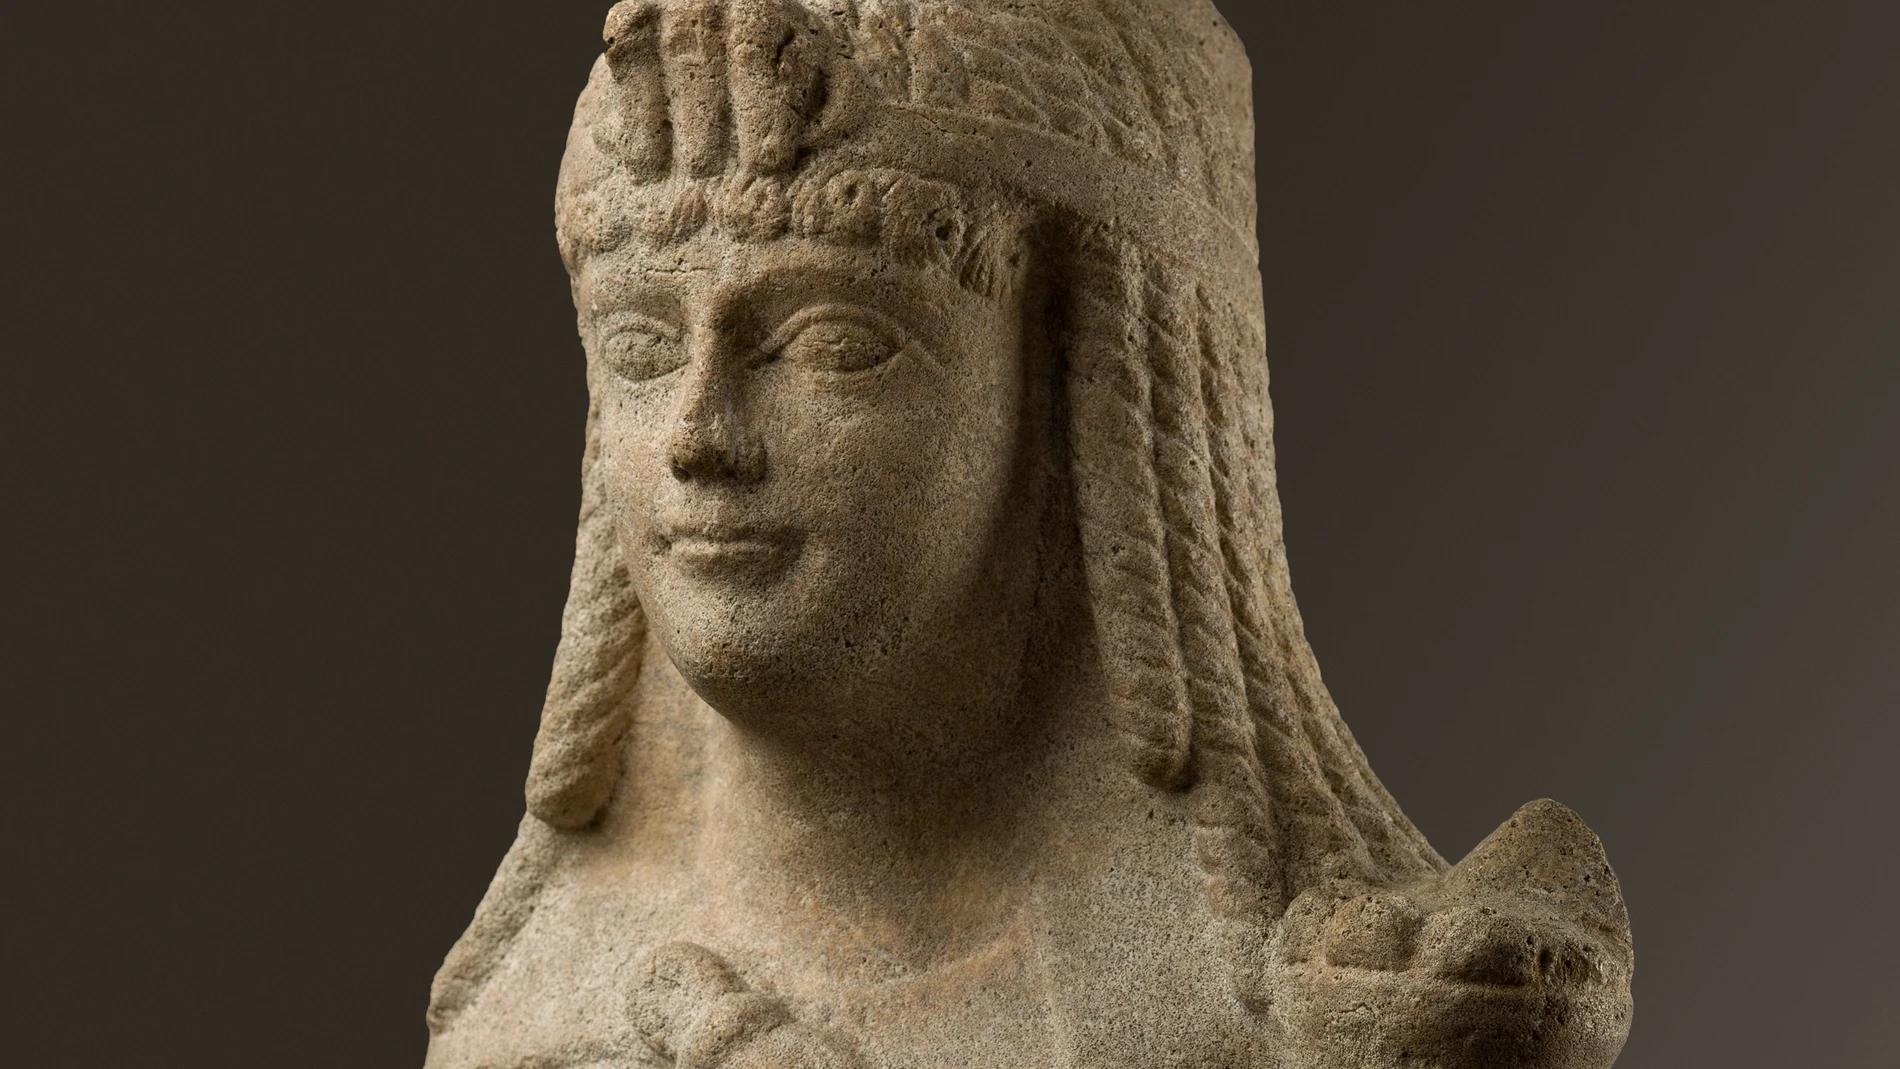 Escultura de mármol de estilo egipcio presumiblemente representando a Cleopatra VII con la corona egipcia del triple uraeus (las tres cobras que representaban los reinos bajo el dominio de la reina) y el característico vestido con el “nudo de Isis”